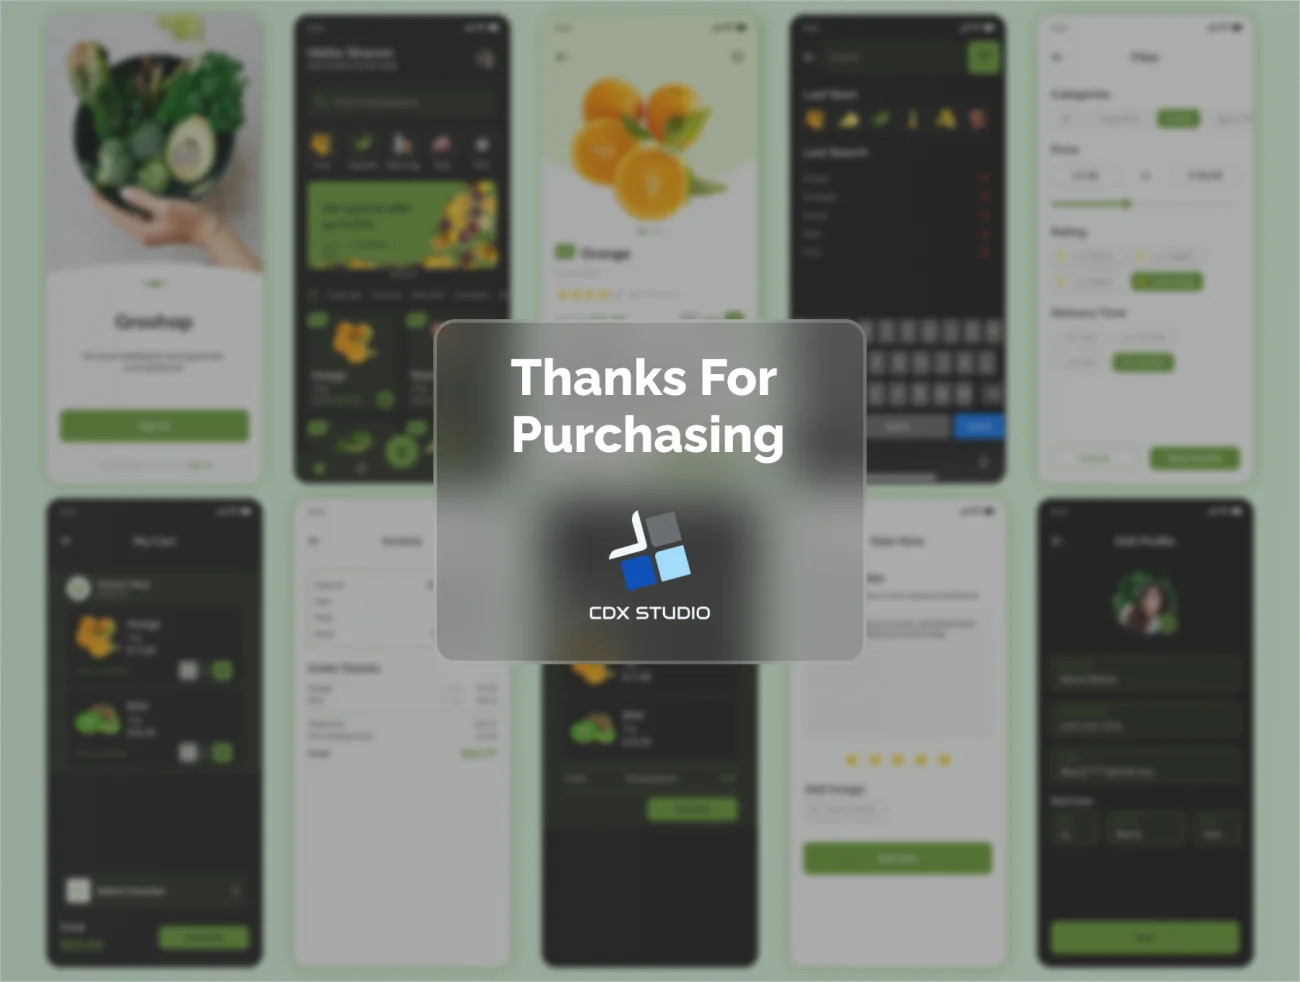 50屏生活百货蔬菜水果采购应用UI设计套件 Groshop – Groceries App UI Kit .figma插图11